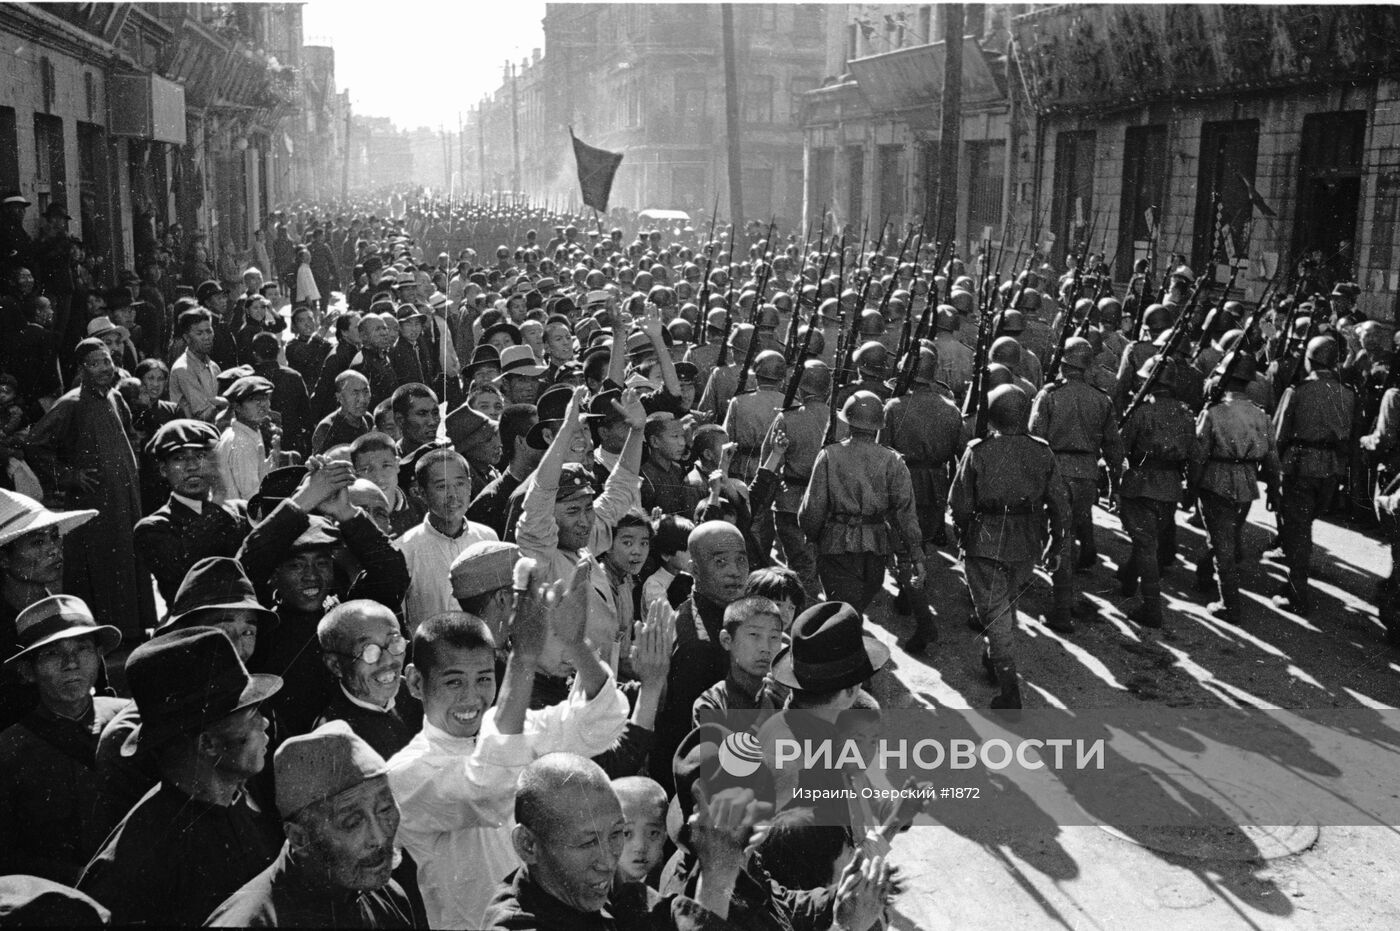 16 сентября 1945 парад в харбине. Харбин парад Победы 1945. Парад советских войск в Харбине в 1945 году. Парад Победы в Харбине 1945 год. Парад Победы советских войск в Харбине 16 сентября 1945 года.